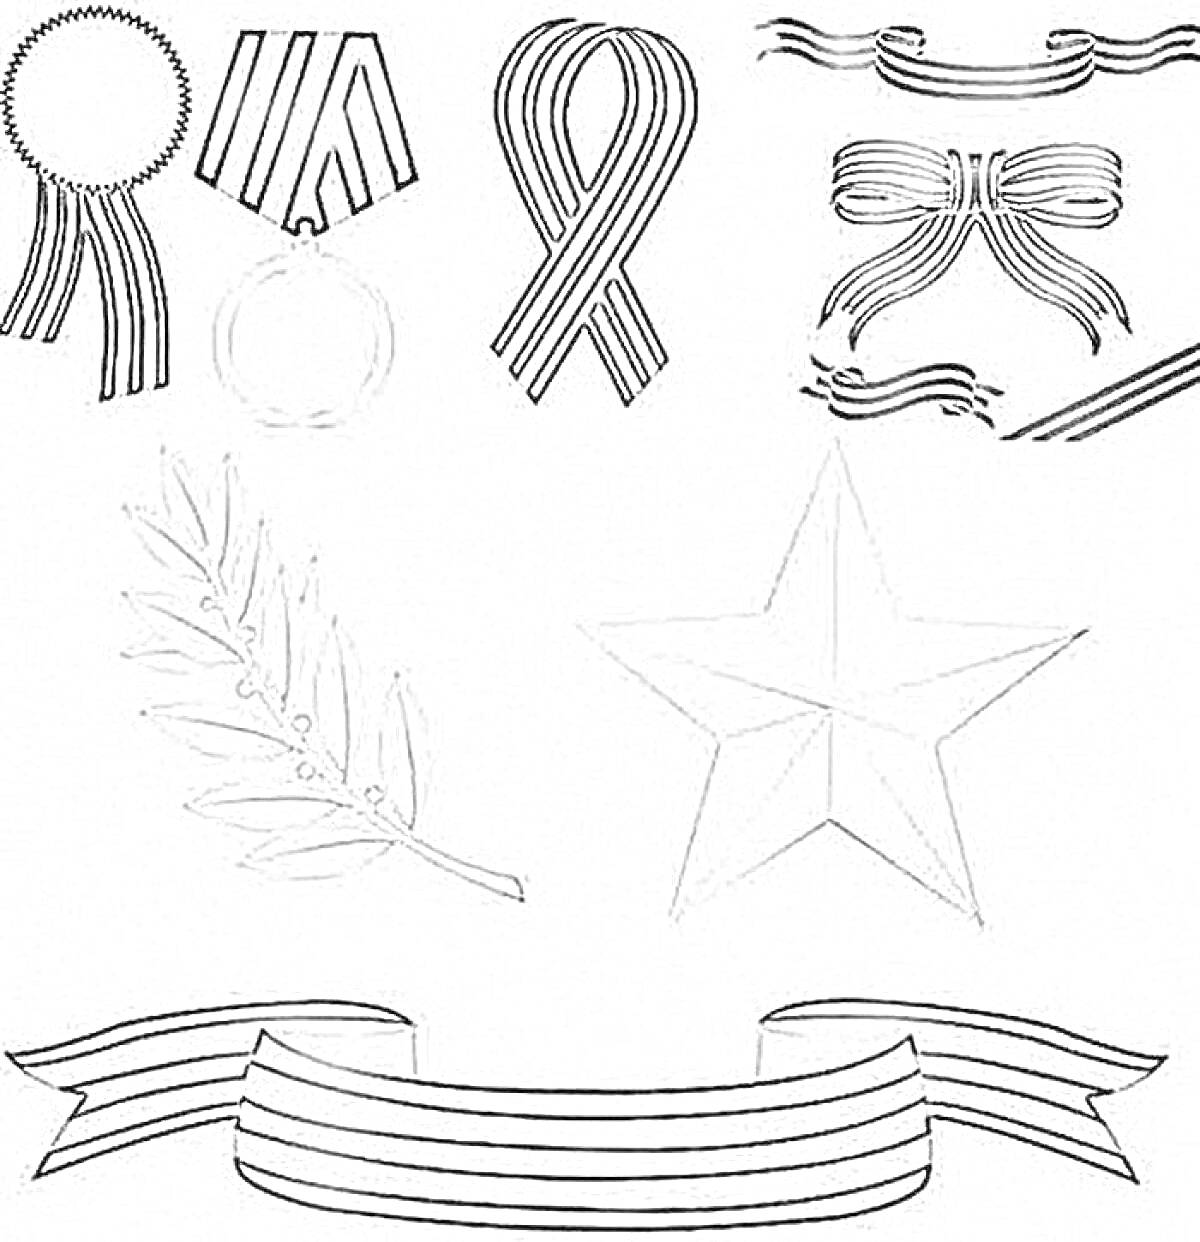 Георгиевская лента, медаль, лента в виде банта, волнистые ленты, лавровая ветвь, пятиконечная звезда, витая лента